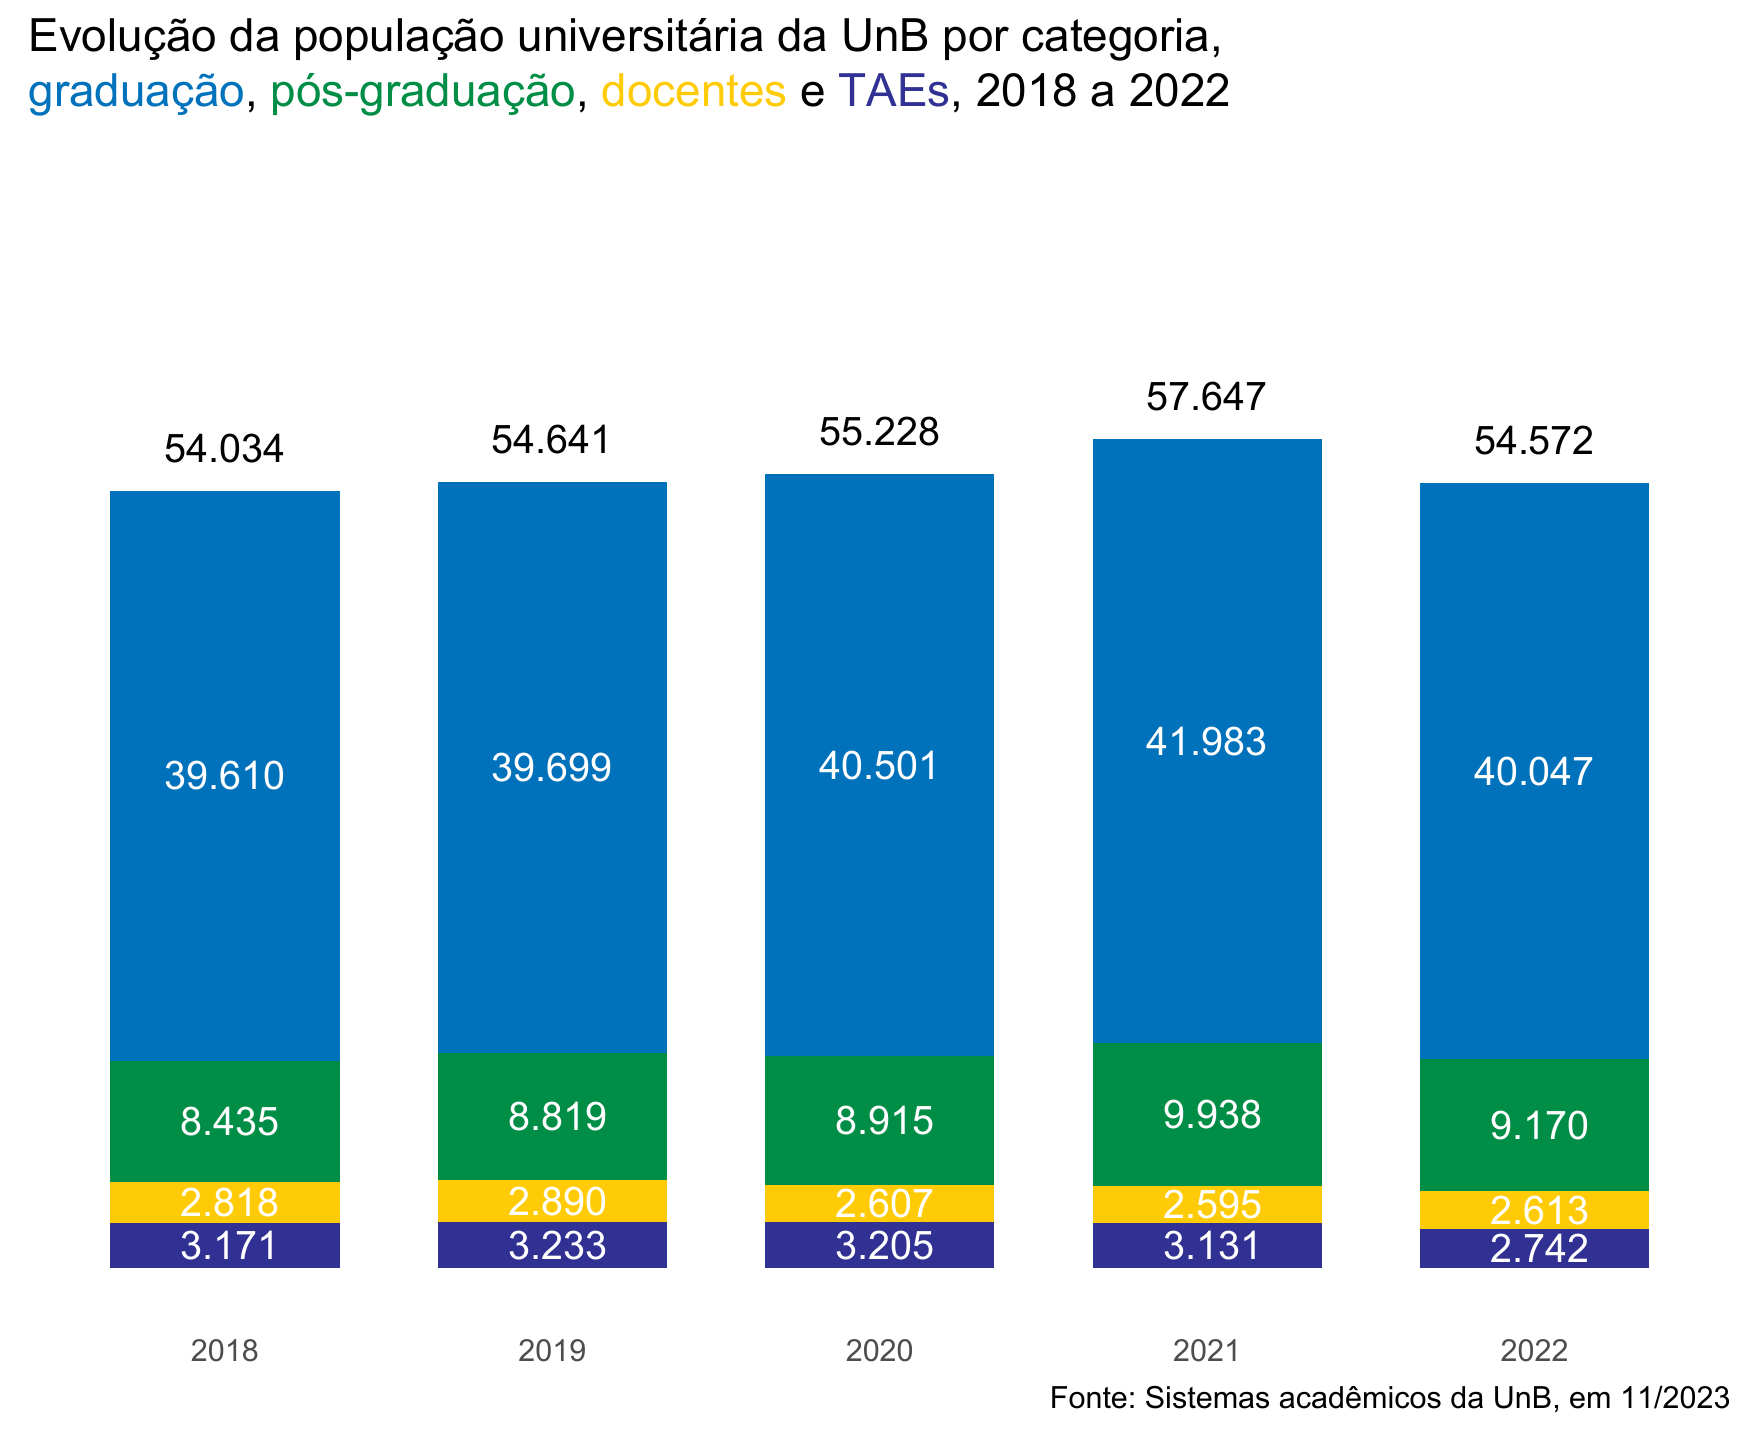 Evolução da população universitária da UnB, 2018 a 2022